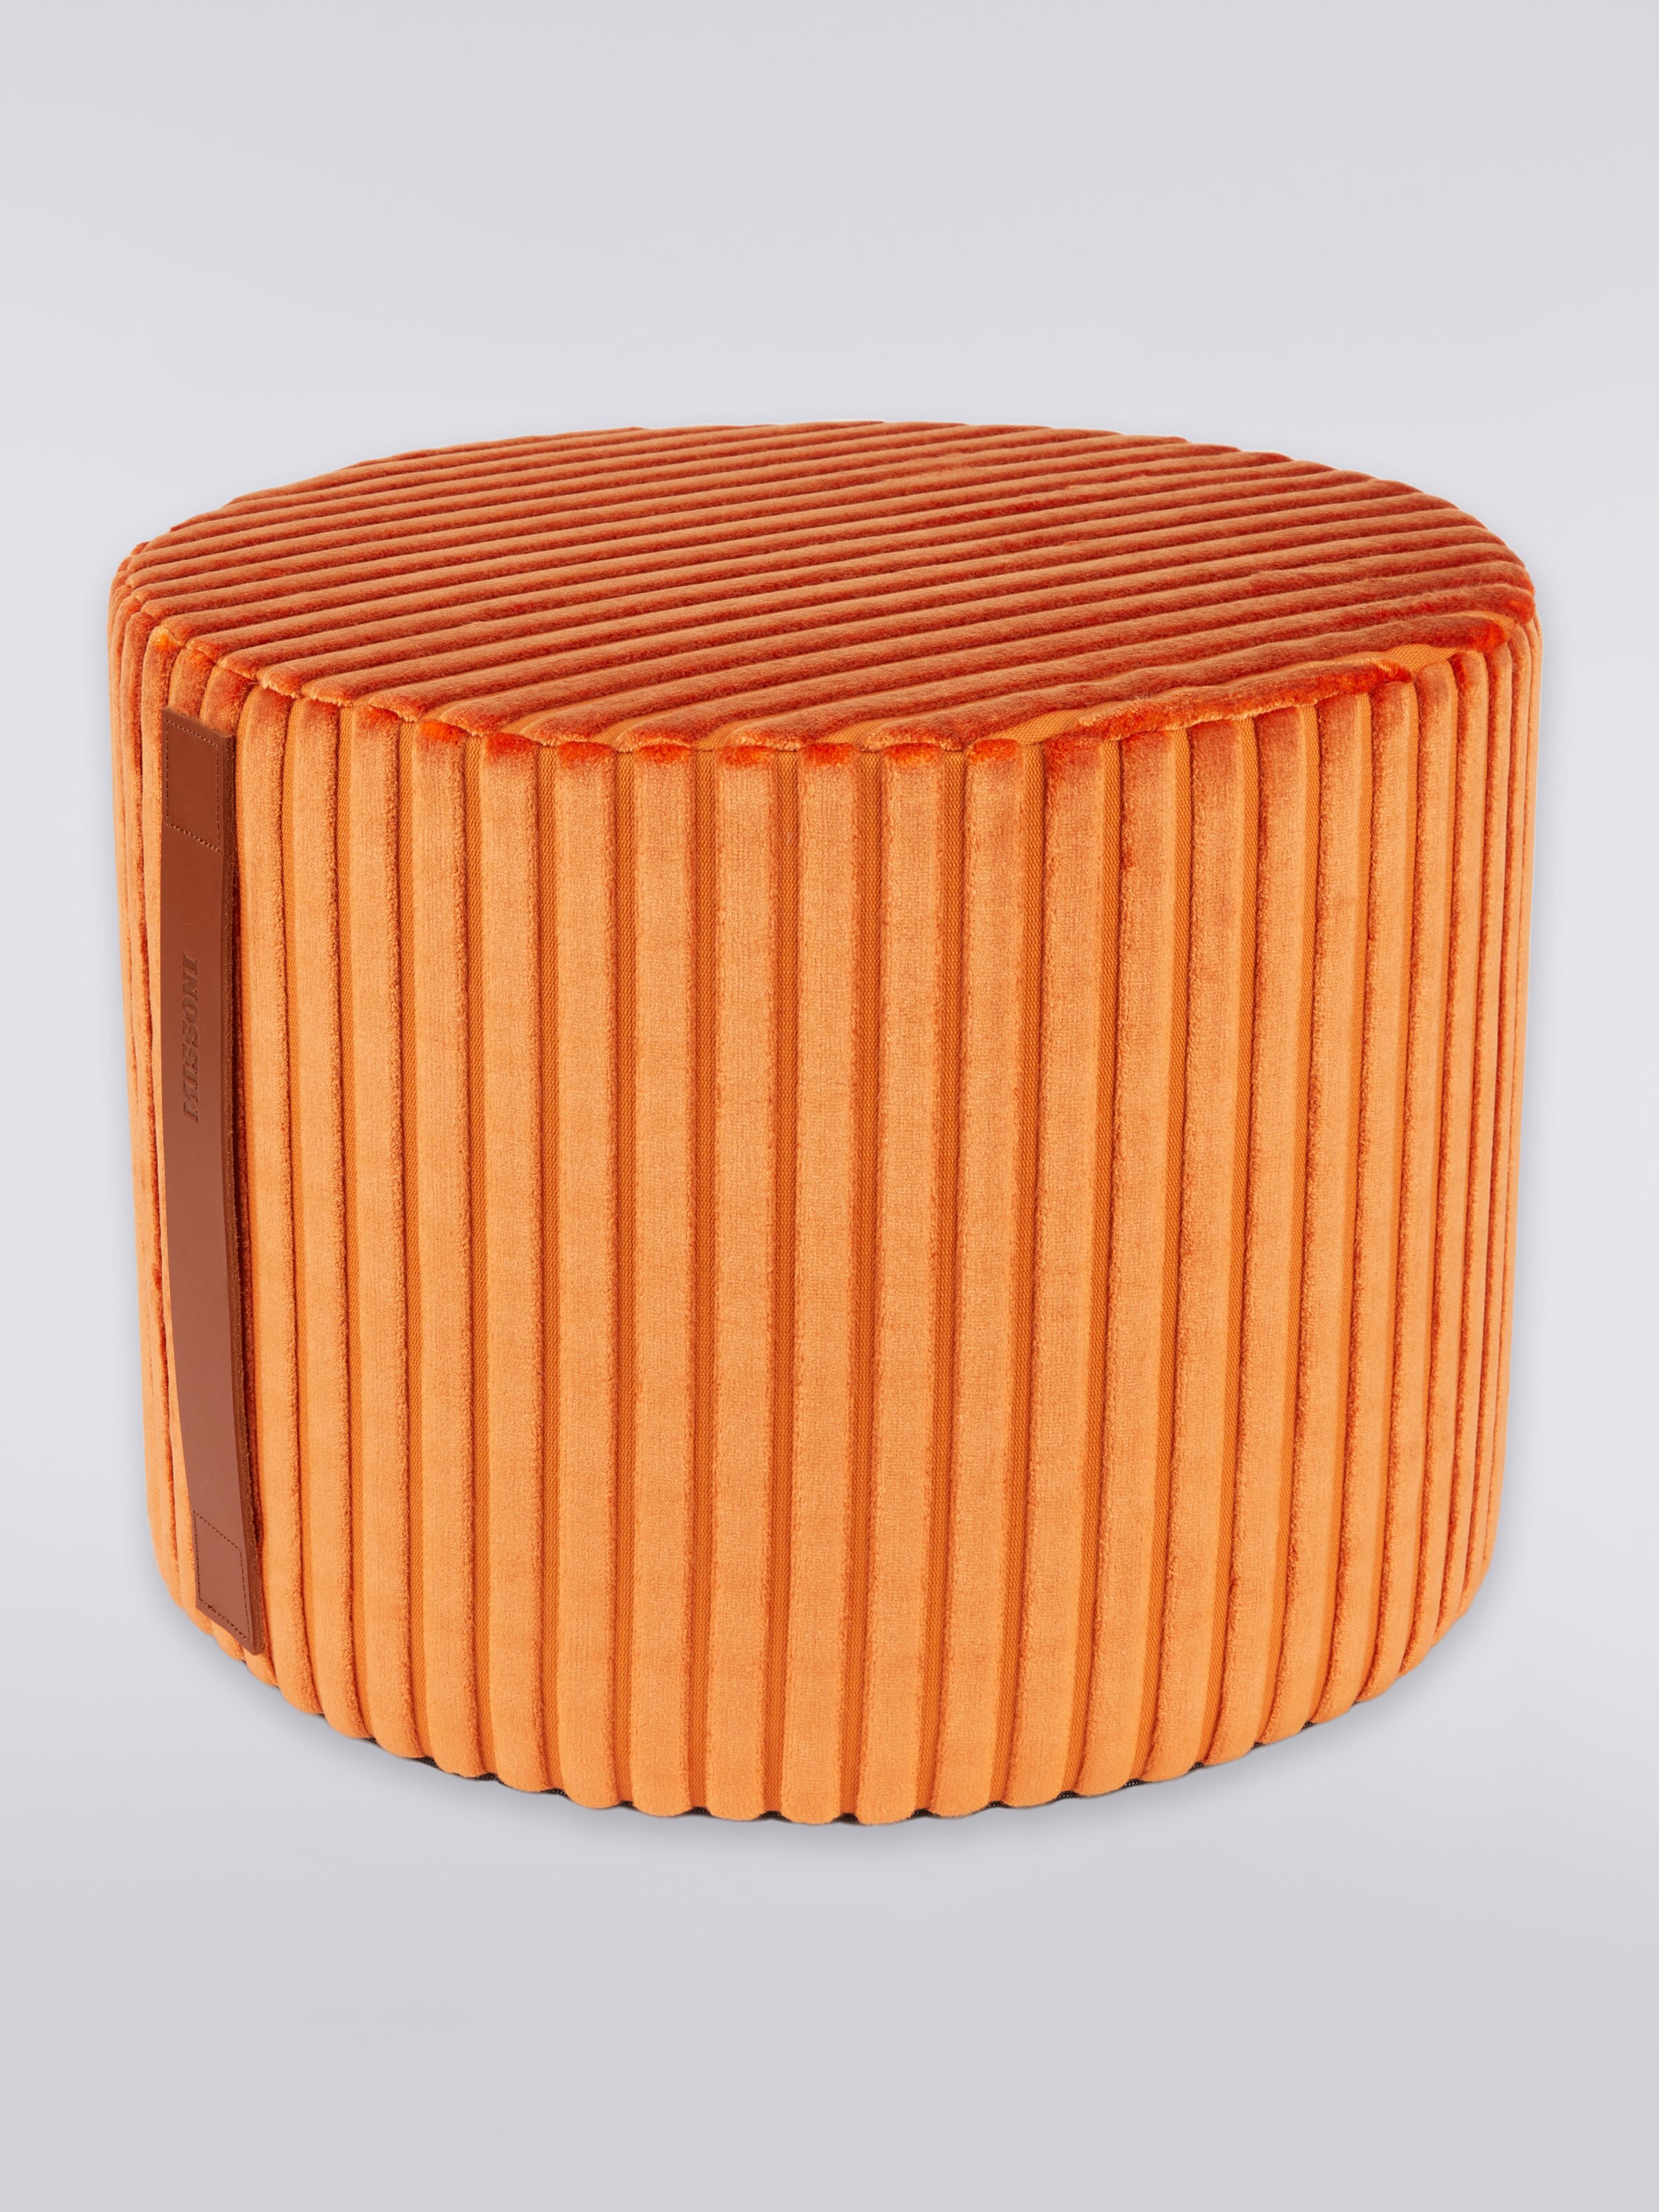 Coomba(クーンバ)筒状のデコレーションフットスツール, オレンジ - 0